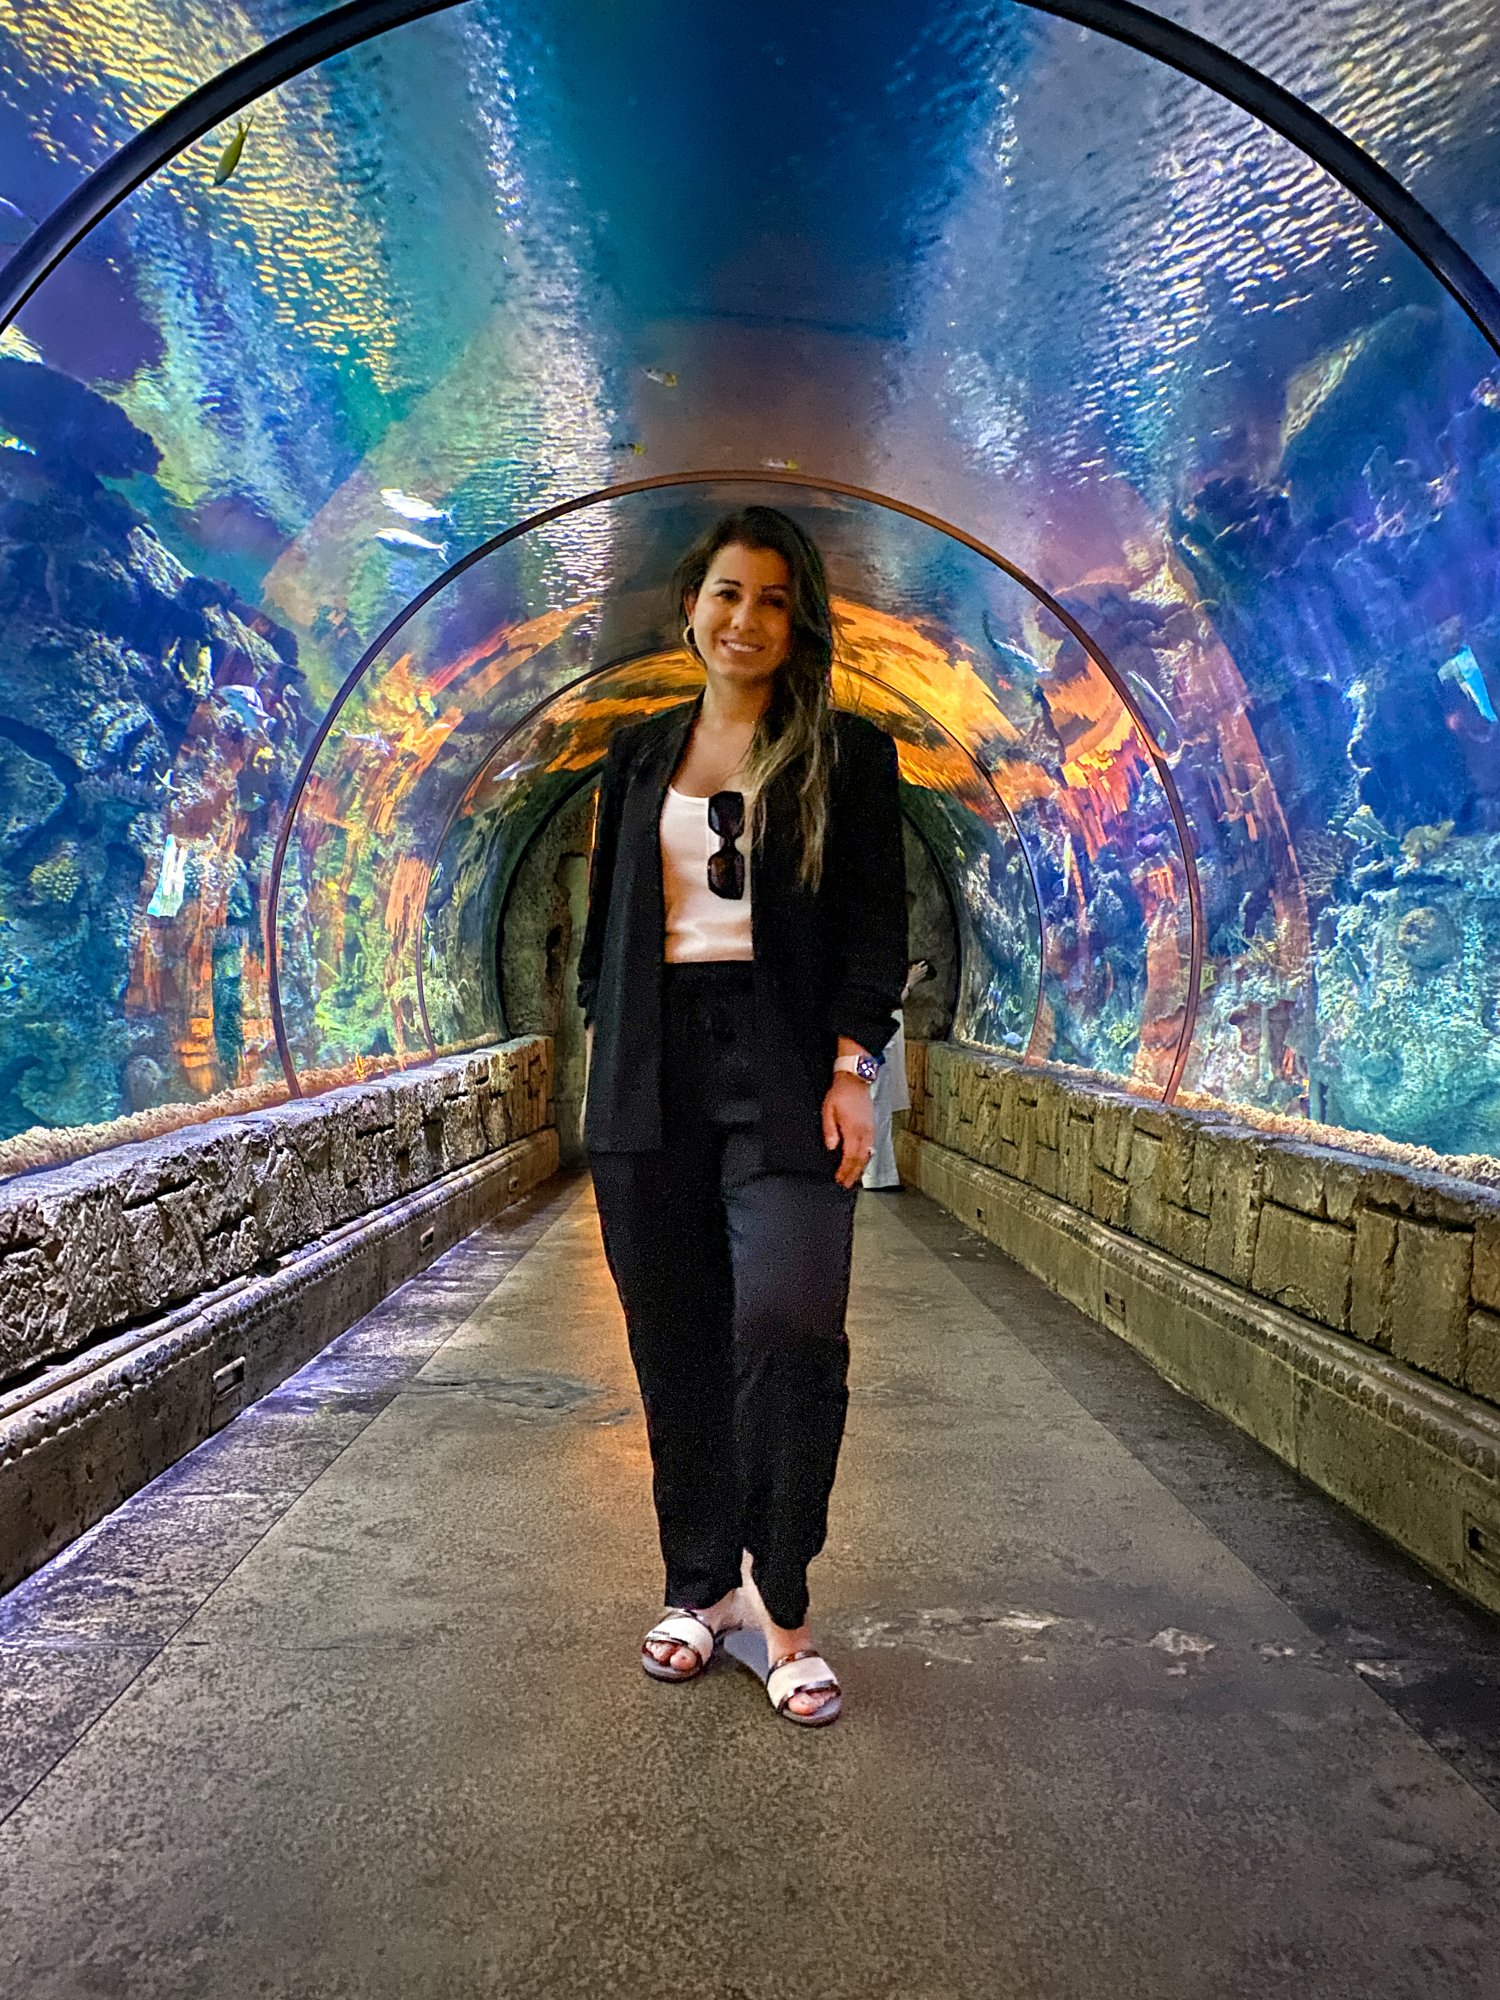 Aquarium tunnel at Shark Reef Aquarium in Las Vegas Mandalay Bay